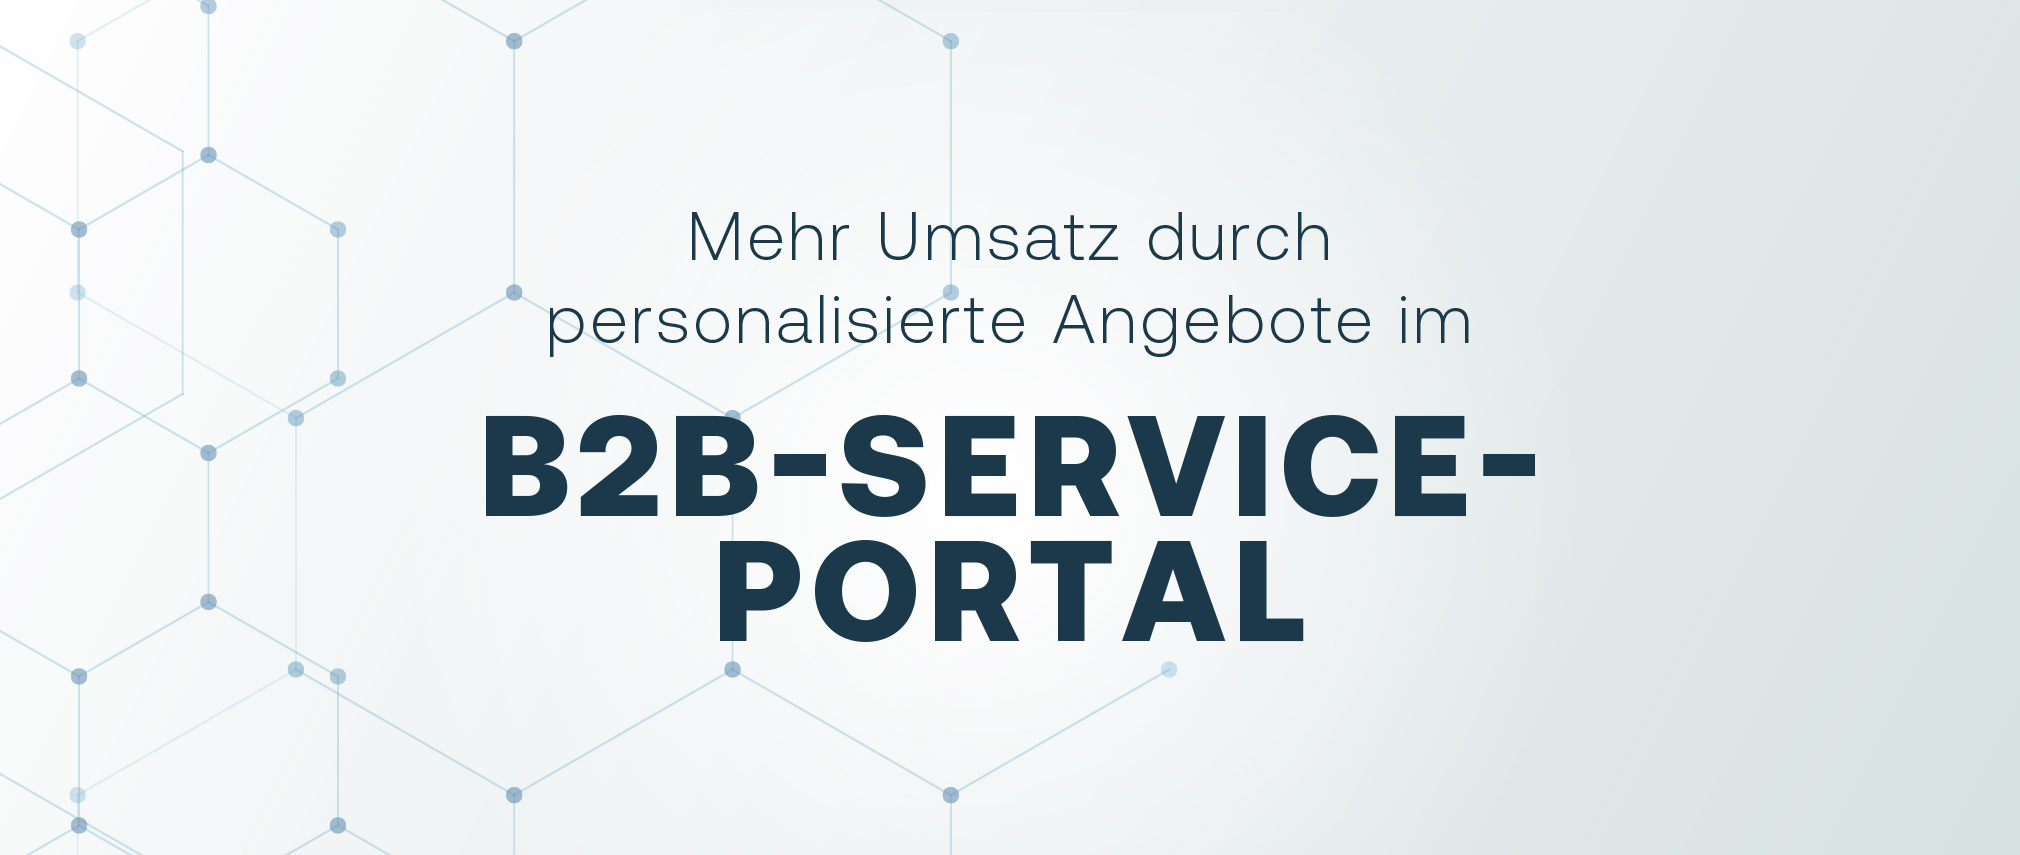 Mehr Umsatz durch personalisierte Angebote im B2B-Service-Portal